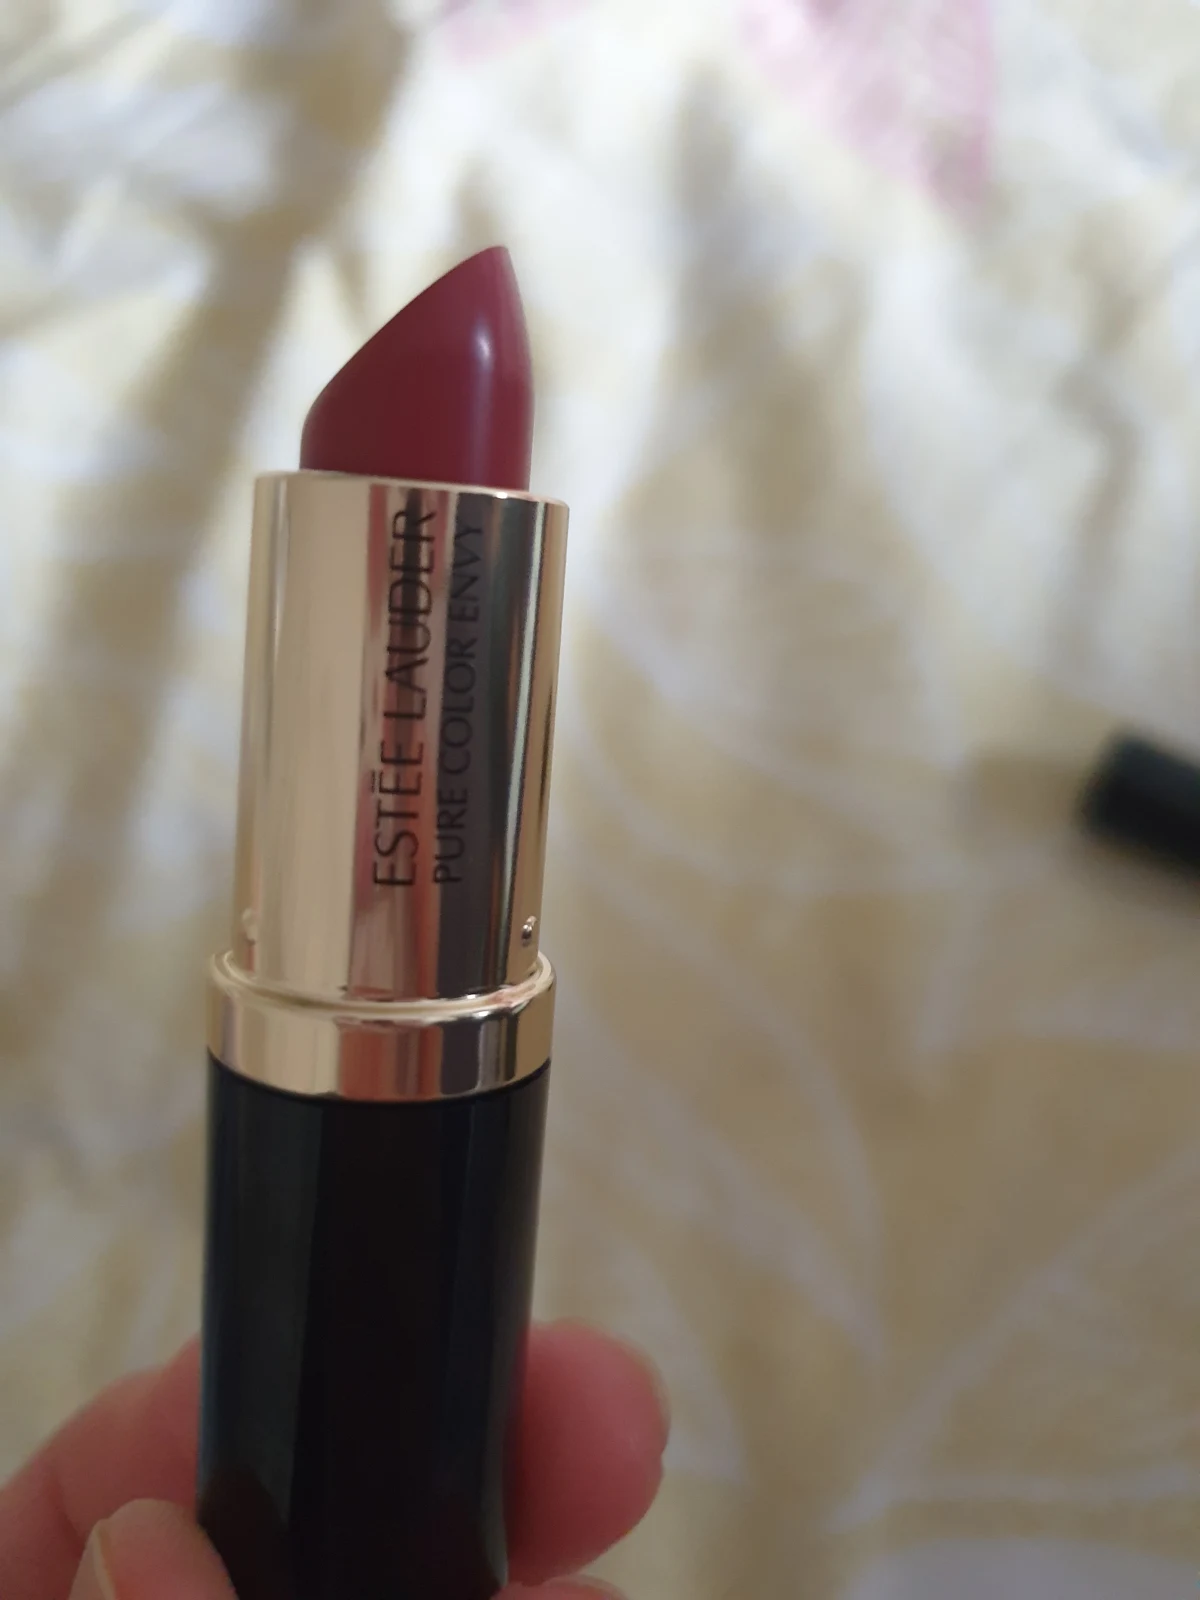 Lippenstift Pure Color Envy Estee Lauder - review image